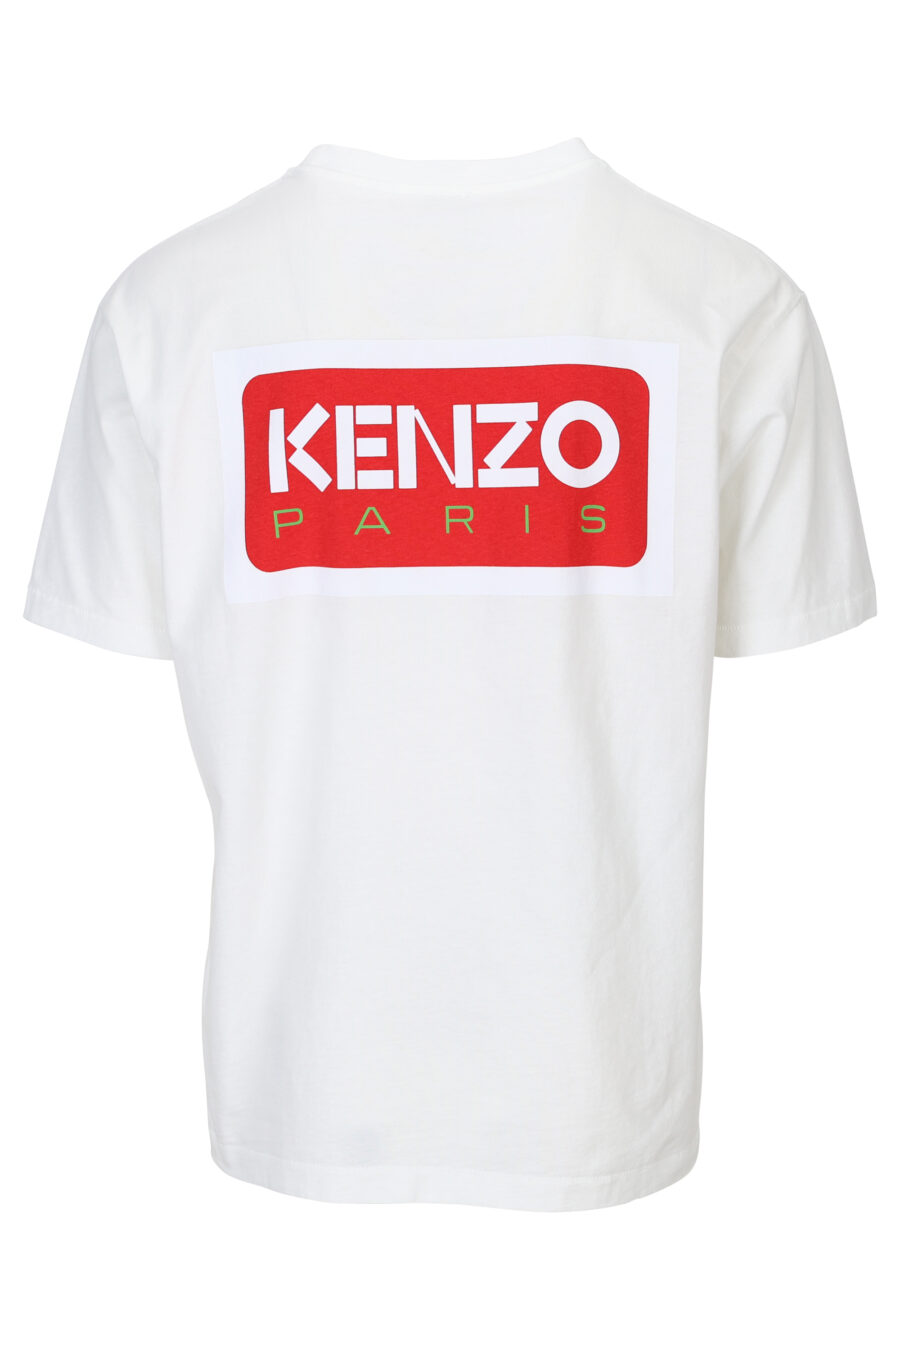 Weißes T-Shirt mit "kenzo paris" Maxilogo auf dem Rücken - 3612230543140 1